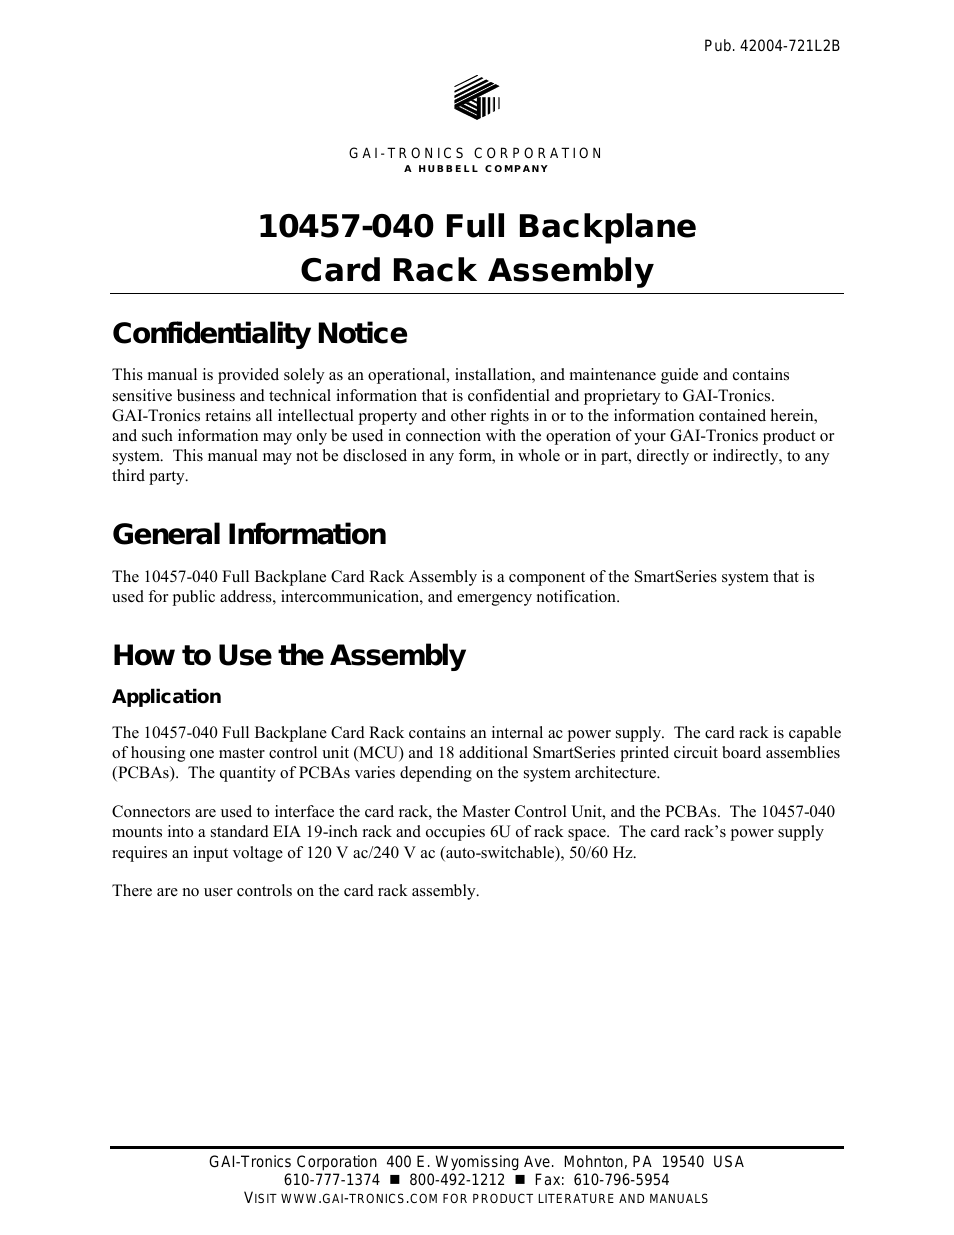 10457-040 Full Backplane Card Rack Assembly